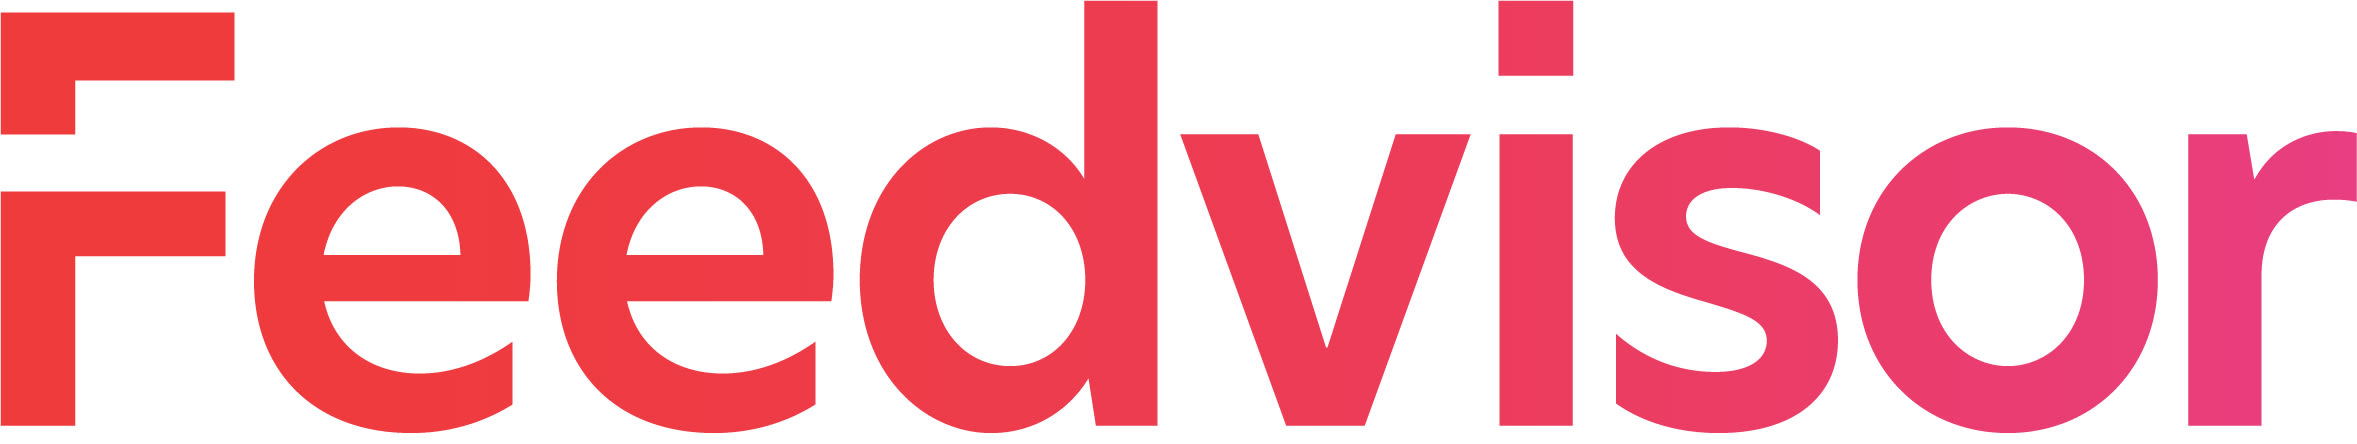 Feedvisor logo